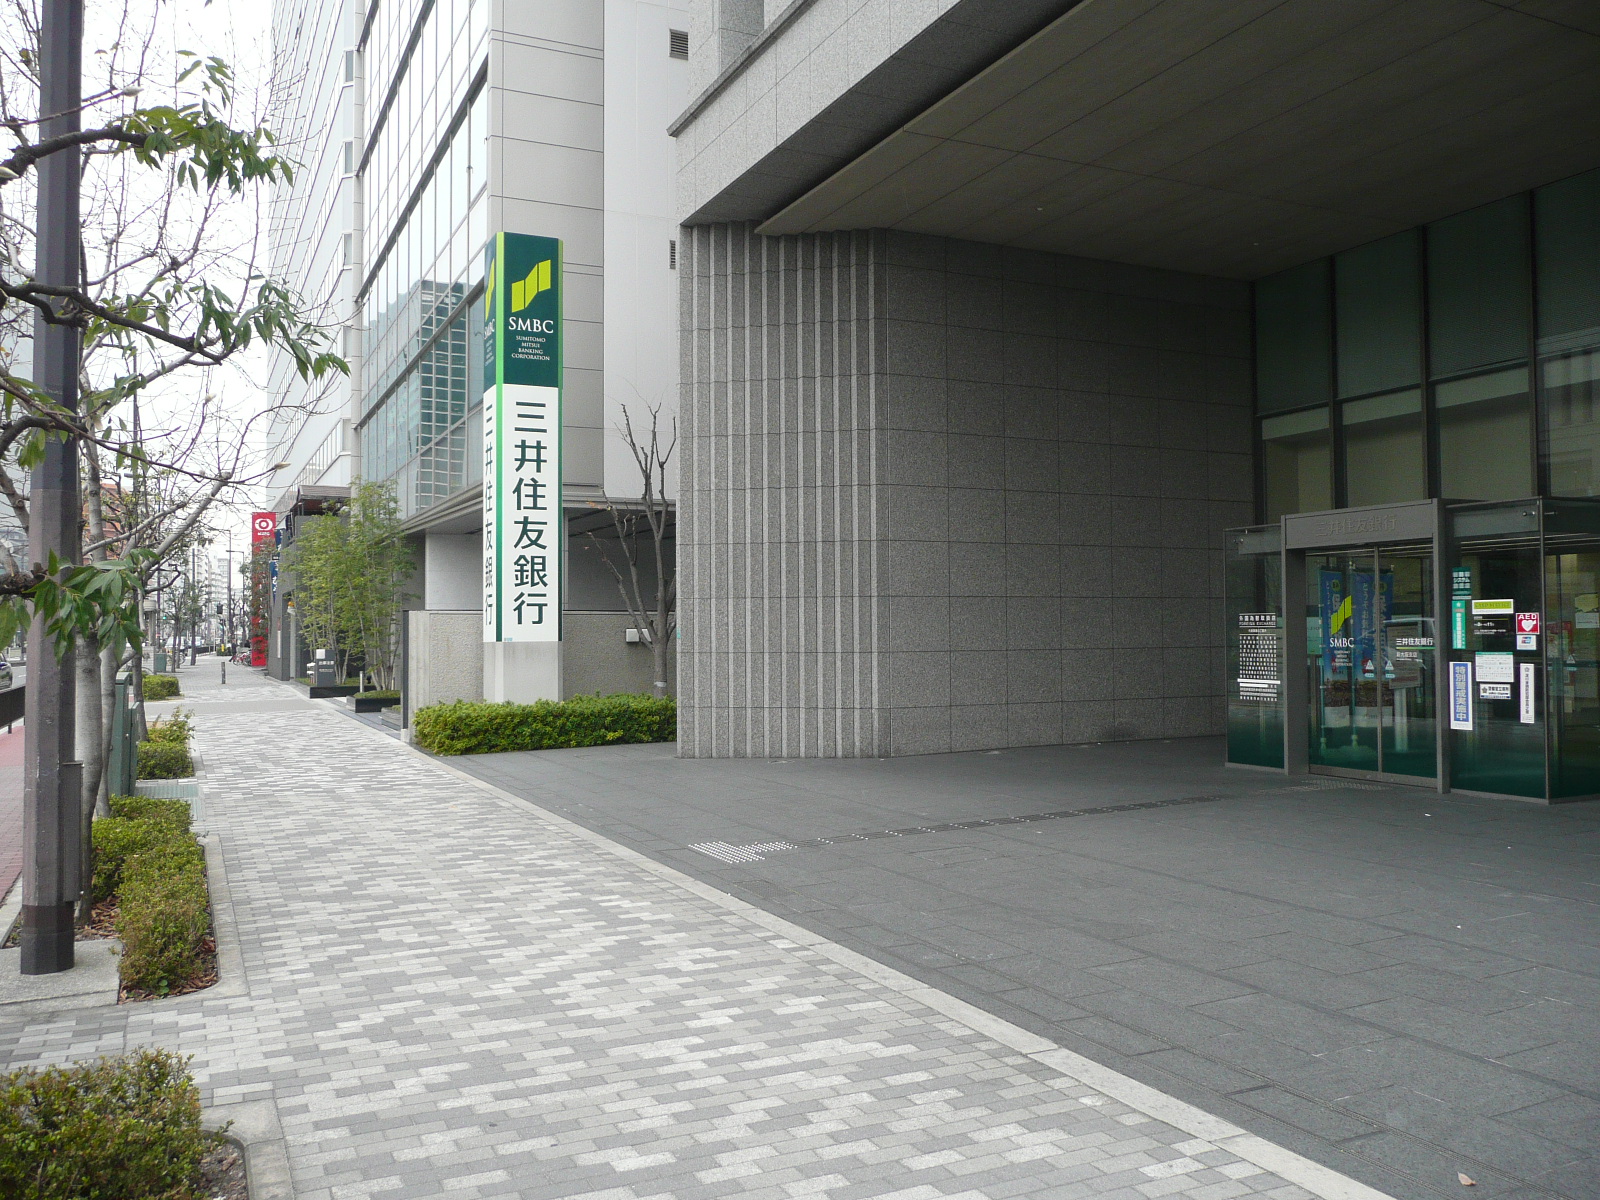 Bank. 458m to Sumitomo Mitsui Banking Corporation Osaka Branch (Bank)